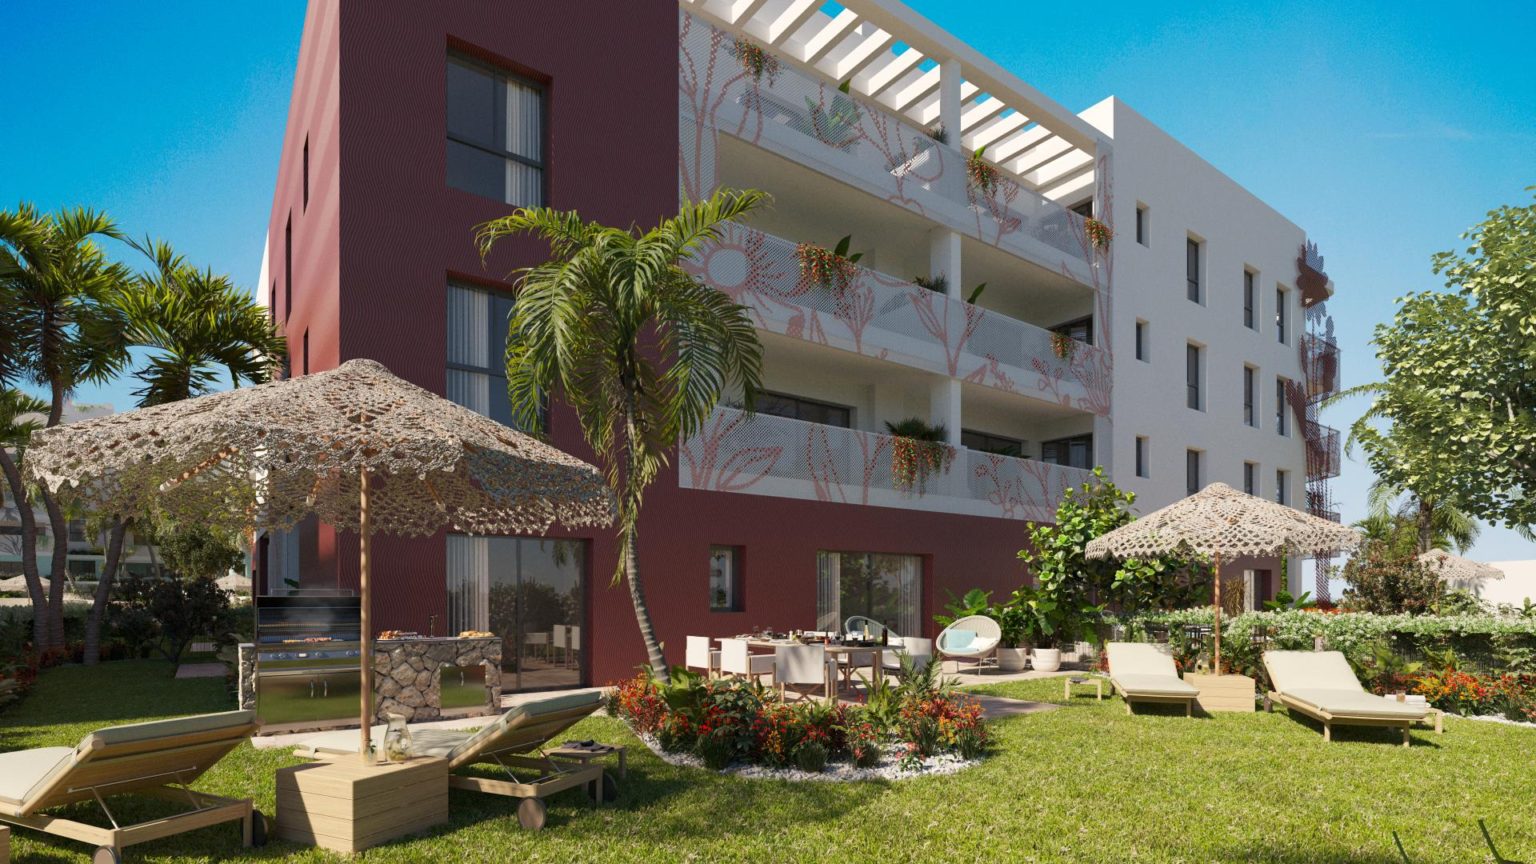 Apartamento de estilo de vida con jardín en la ciudad de Ibiza con gestión de alquiler gratuito para inversores